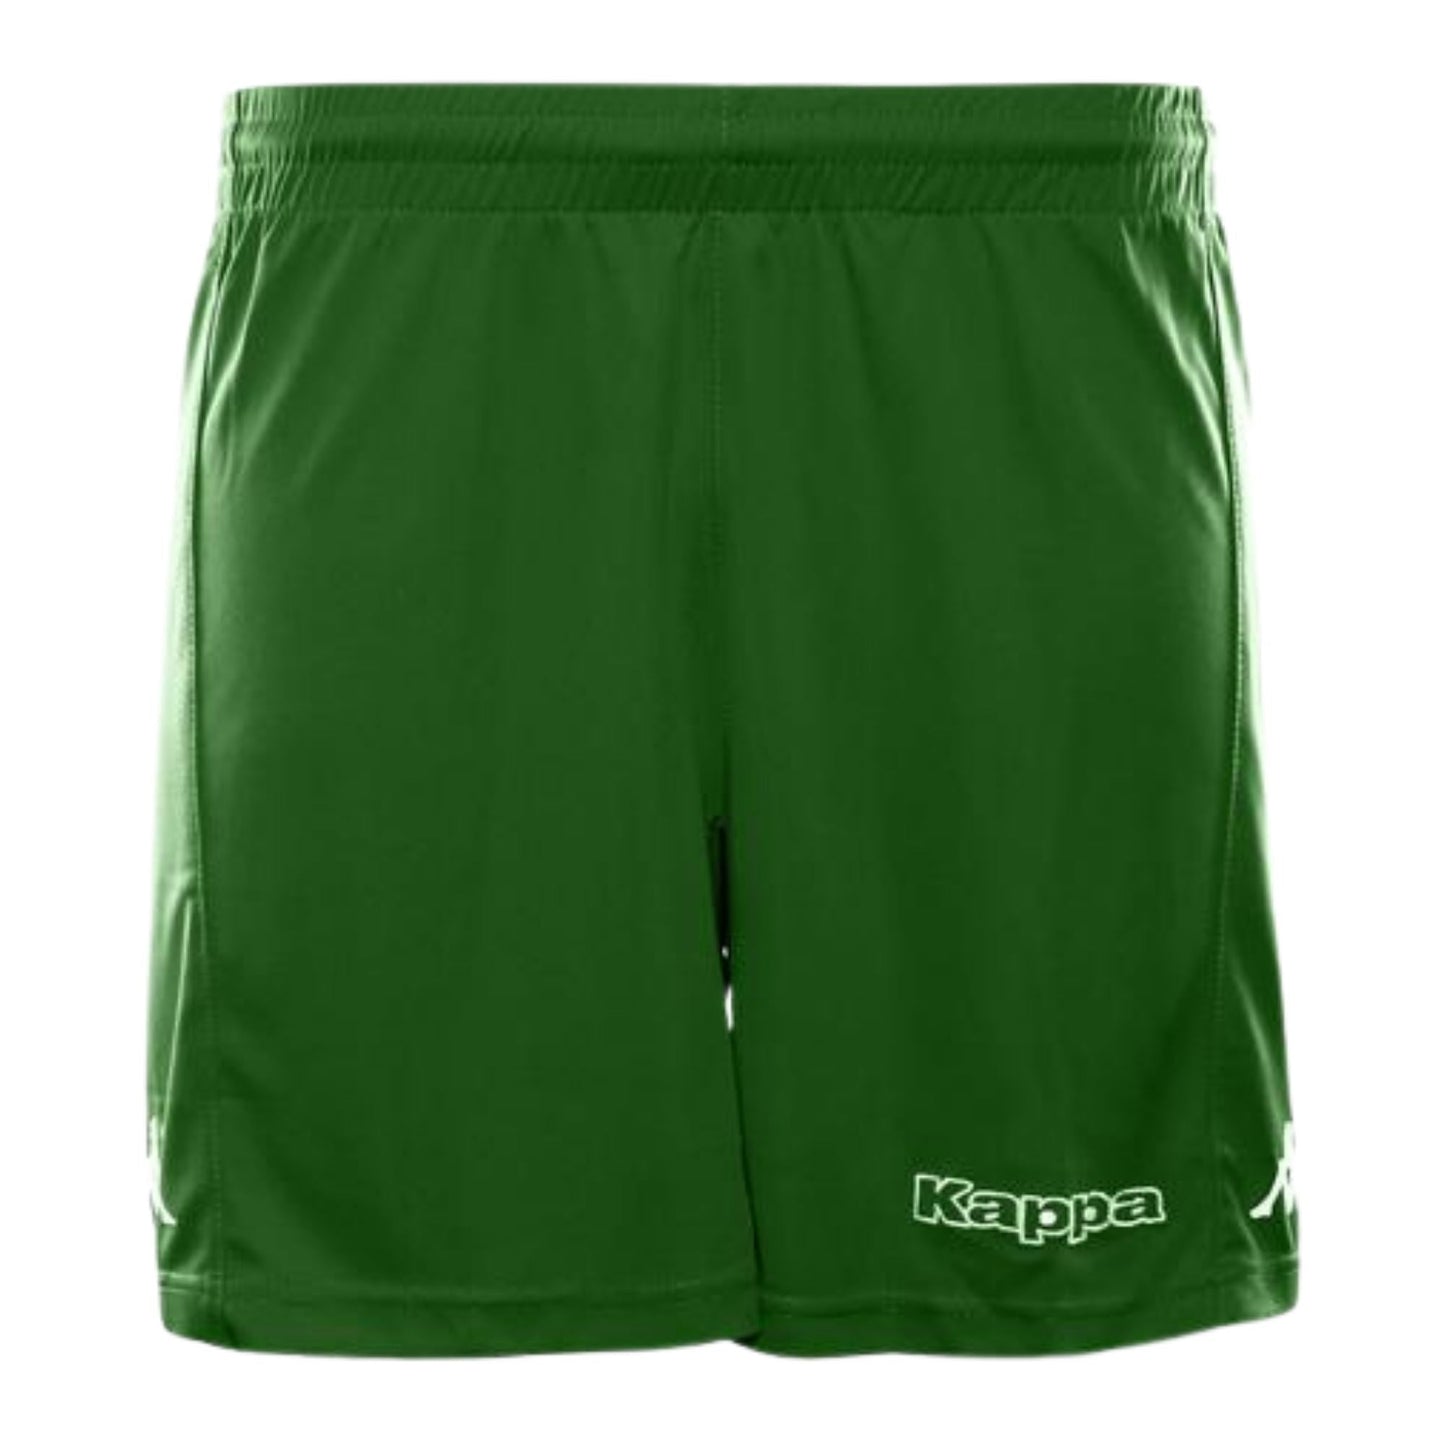 Kappa Unisex Shorts Shorts KAPPA XS EMERALD 